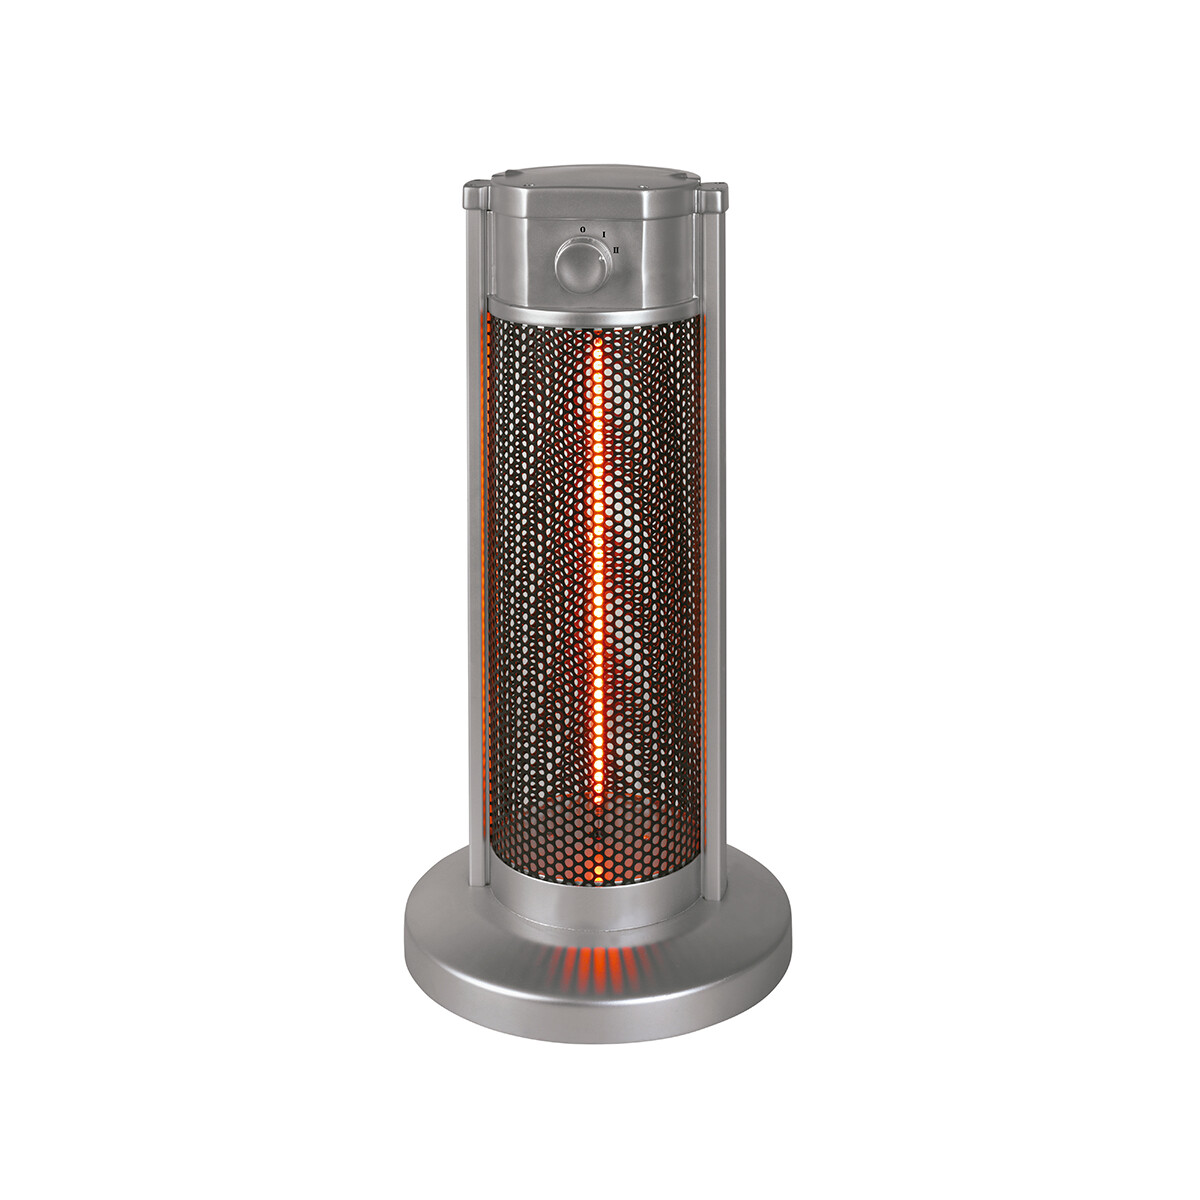 Calentador de Fibra de Carbono Futura Plus + - Gris Inox 